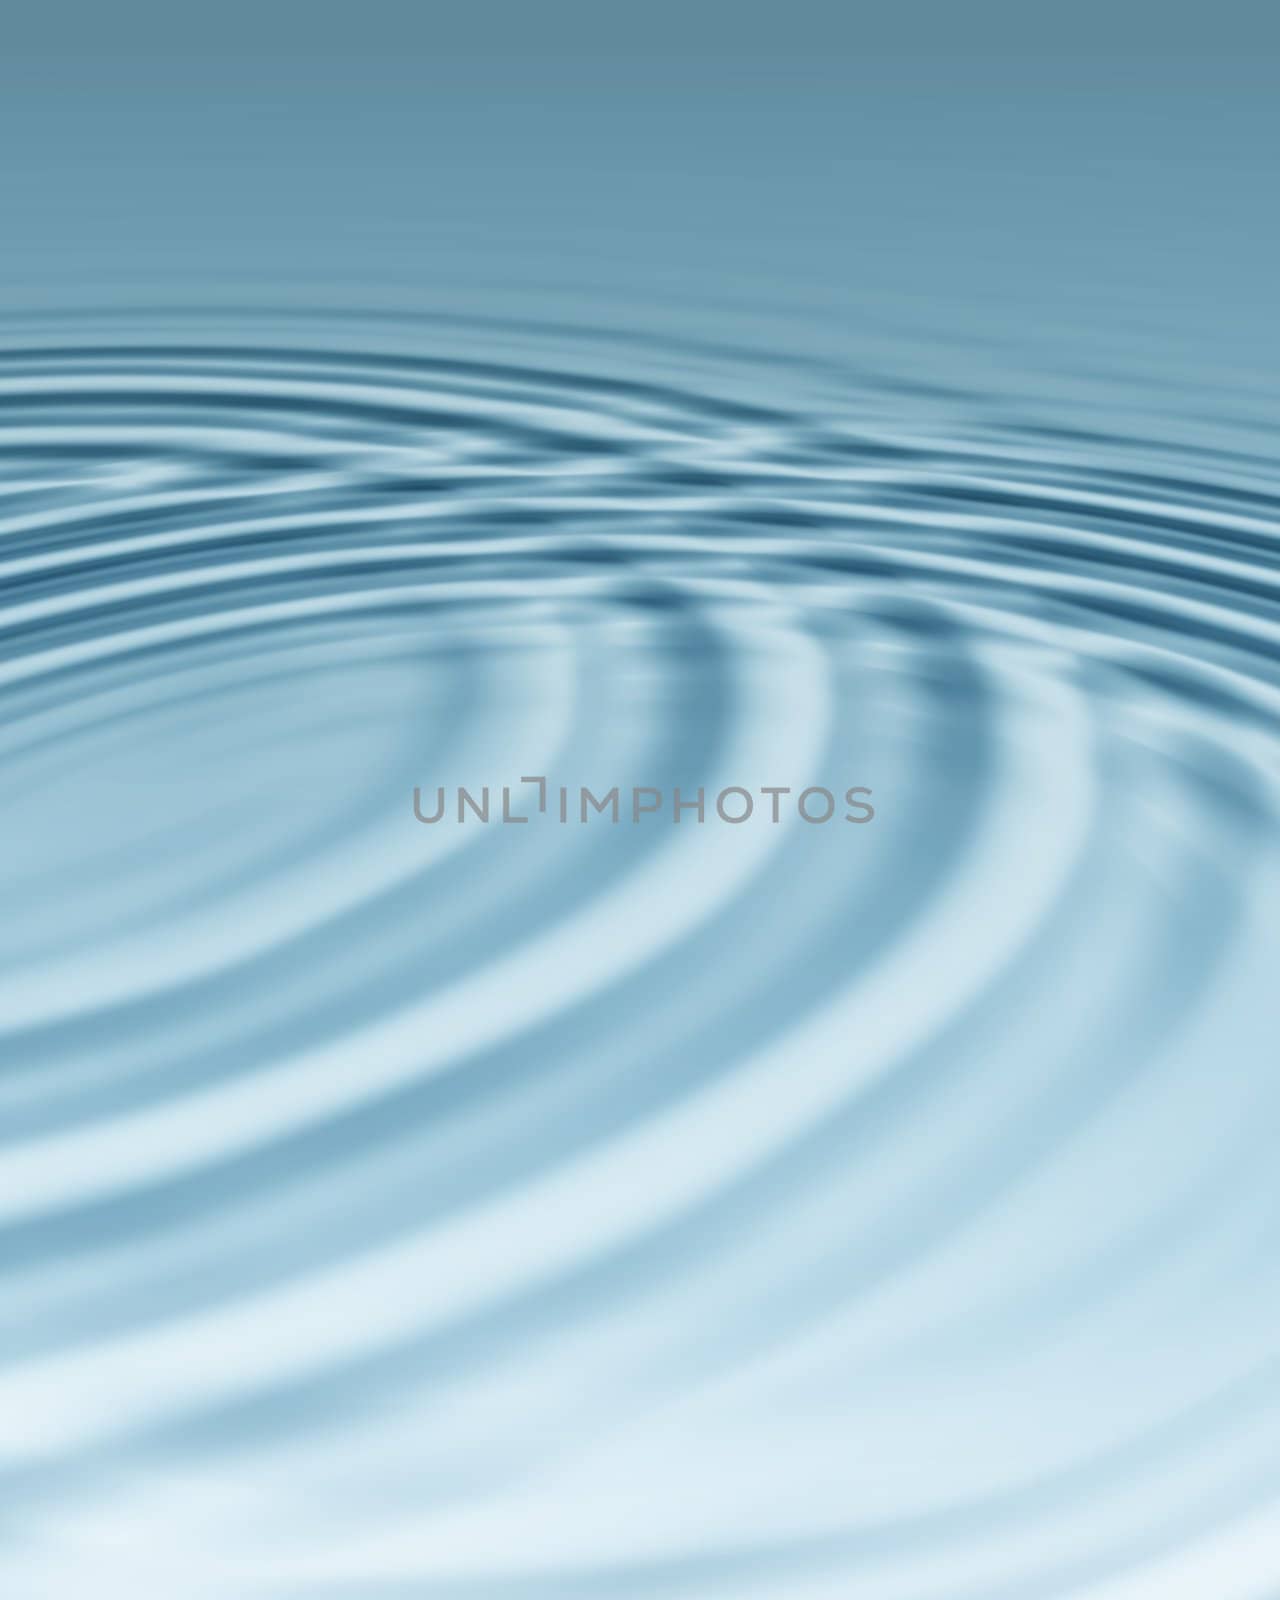  bluish water ripples background